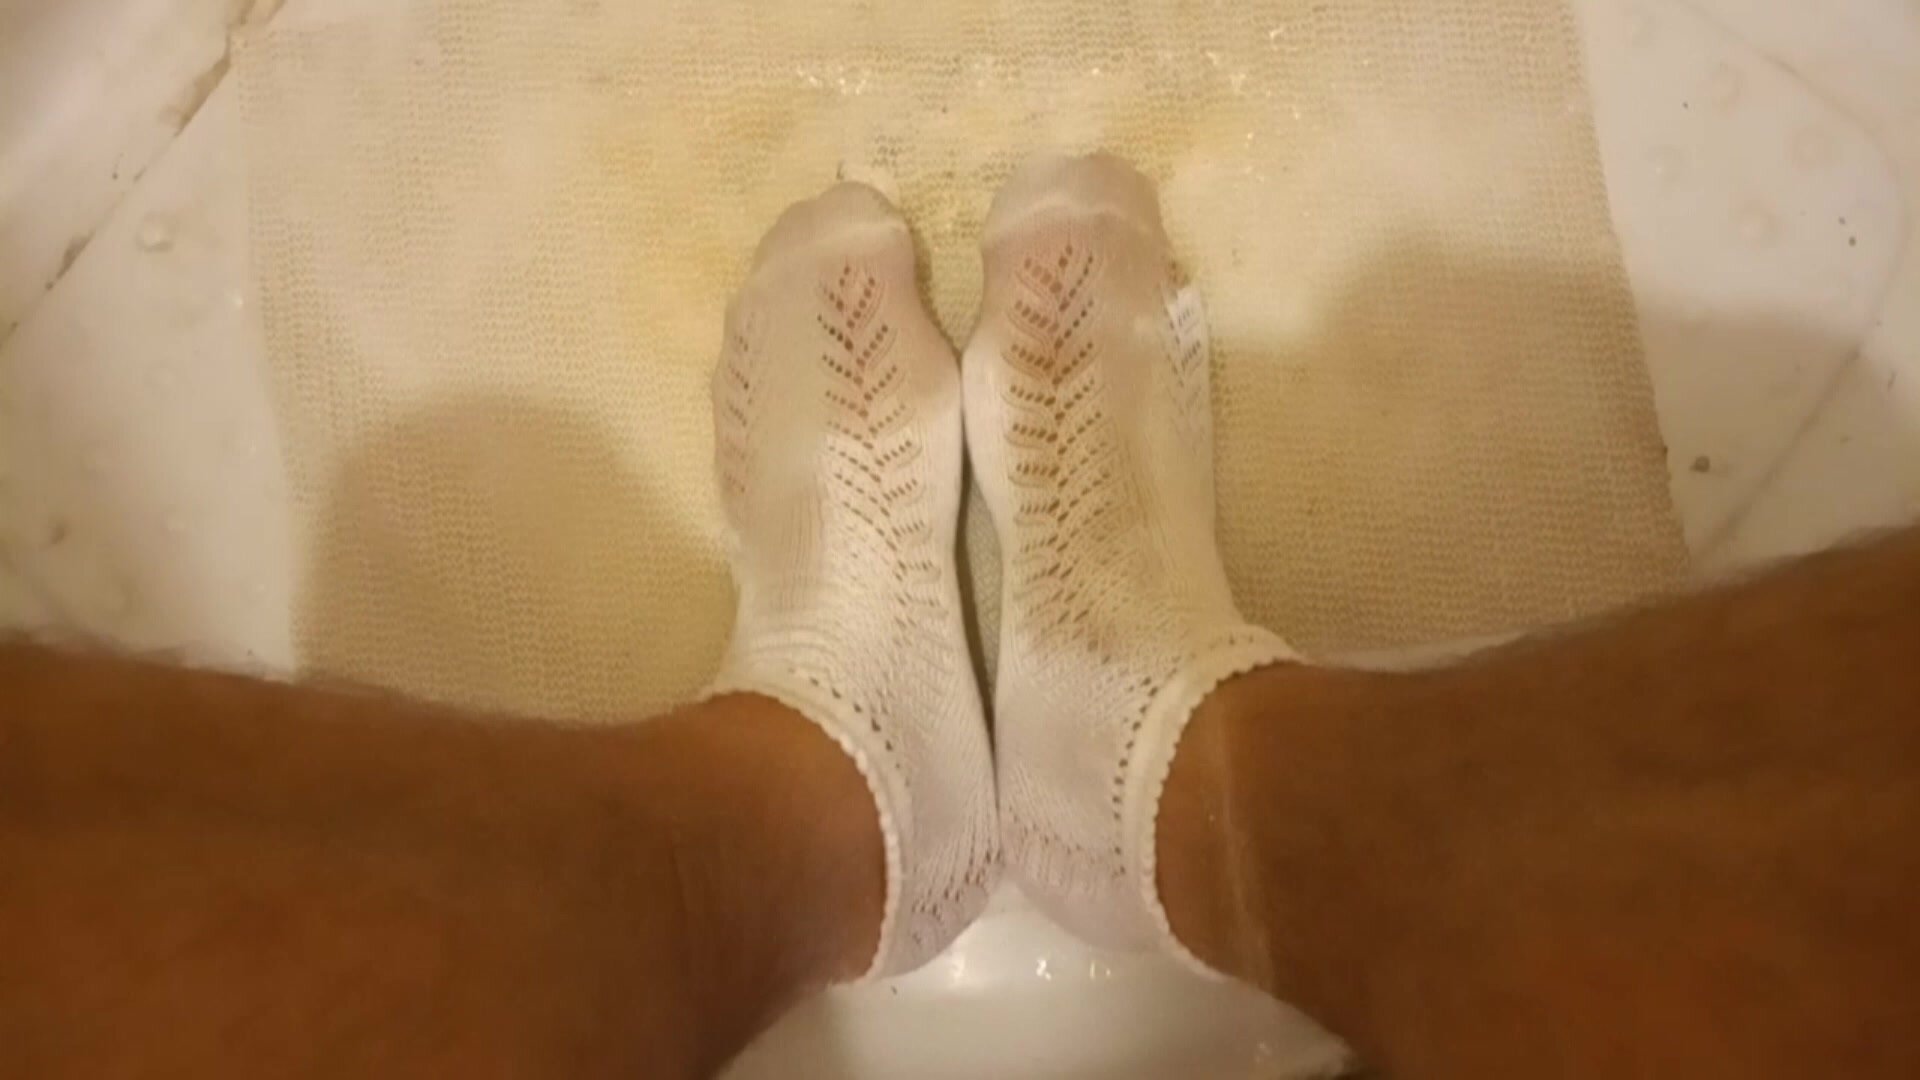 pee on socks